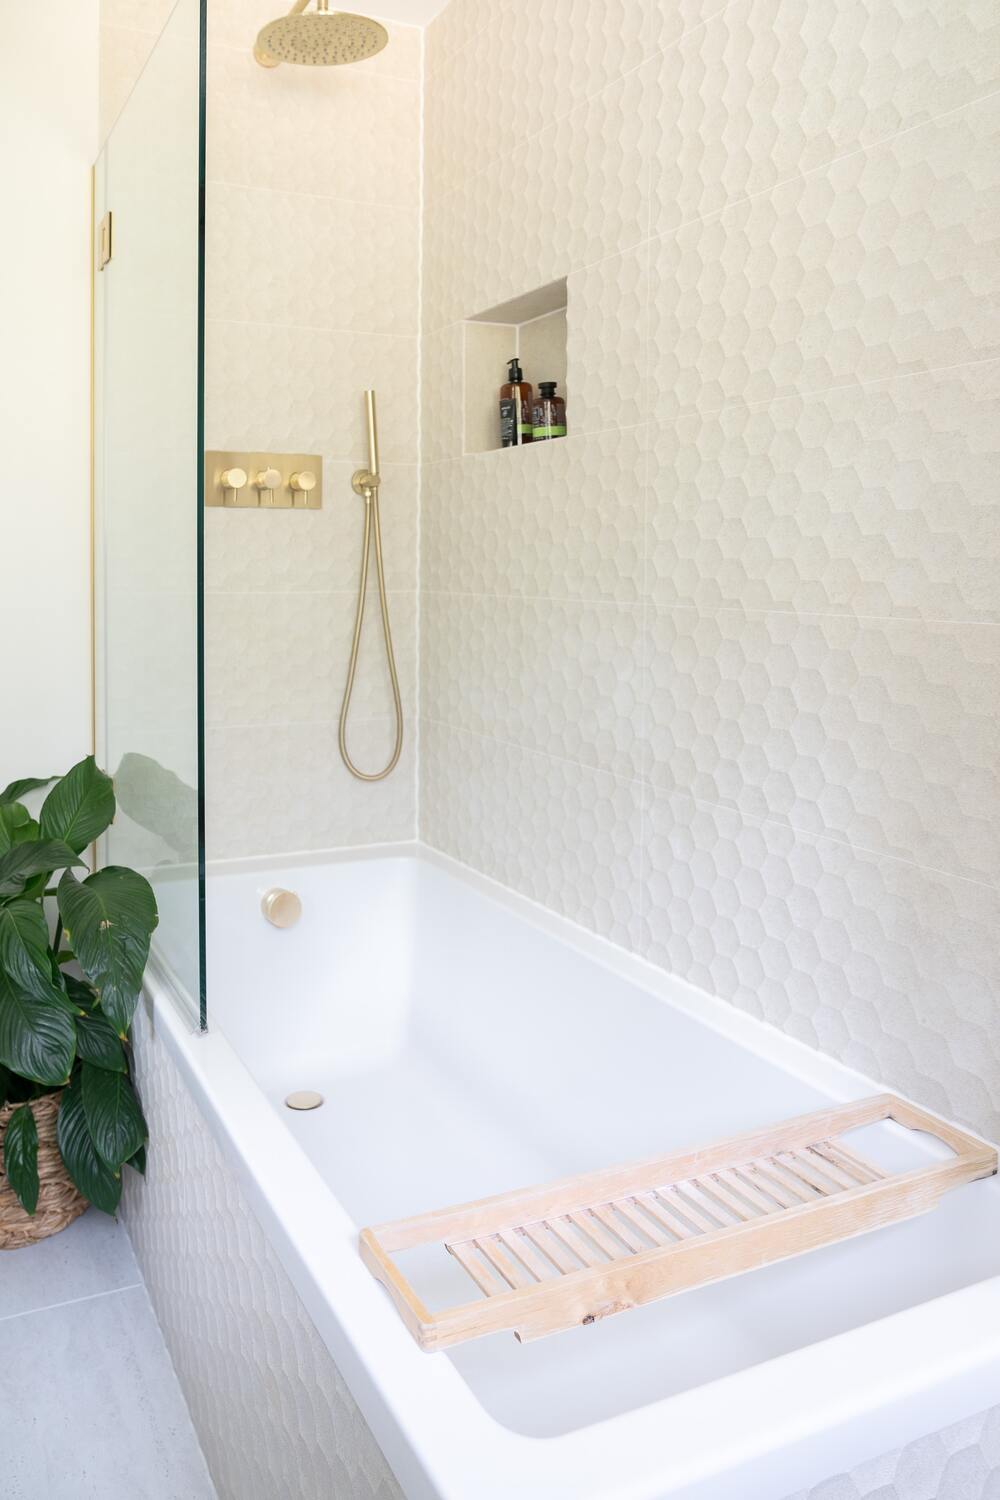 Eierschalenfarbene Wände, weisse Badewanne und goldene Armaturen, neben der Badewannendusche eine buschige Pflanze